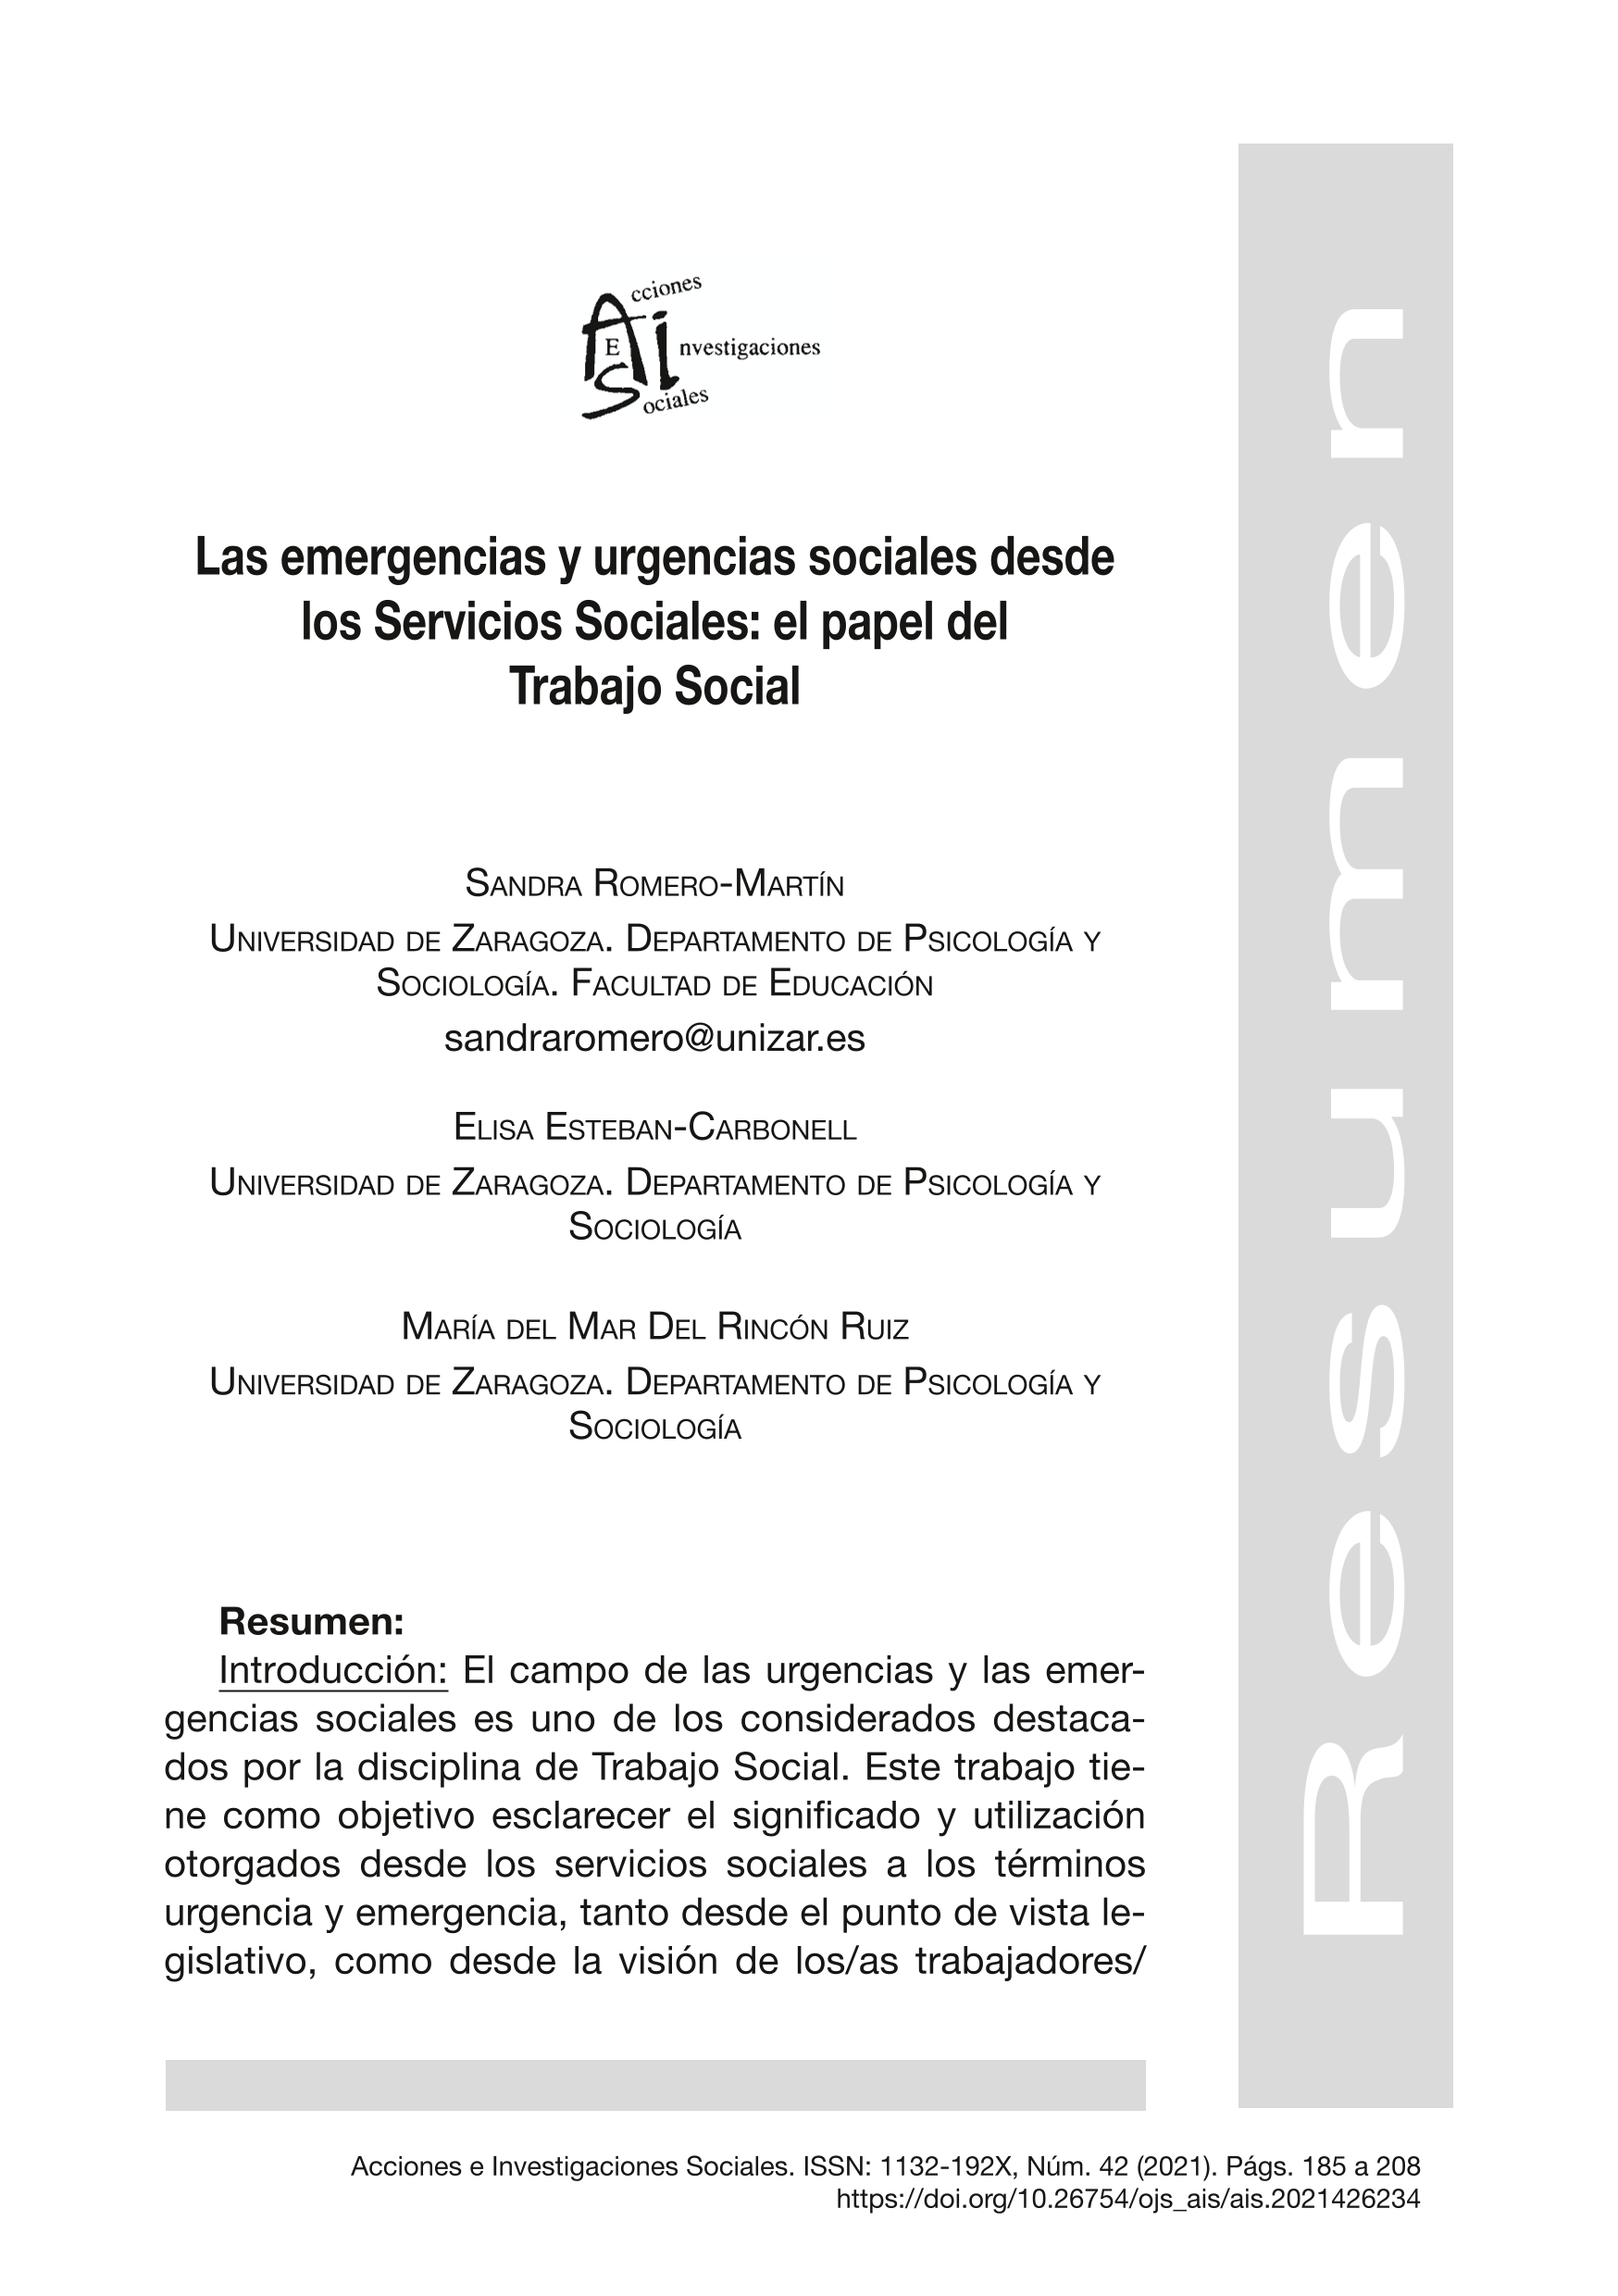 Las emergencias y urgencias sociales desde los Servicios Sociales: el papel del Trabajo Social